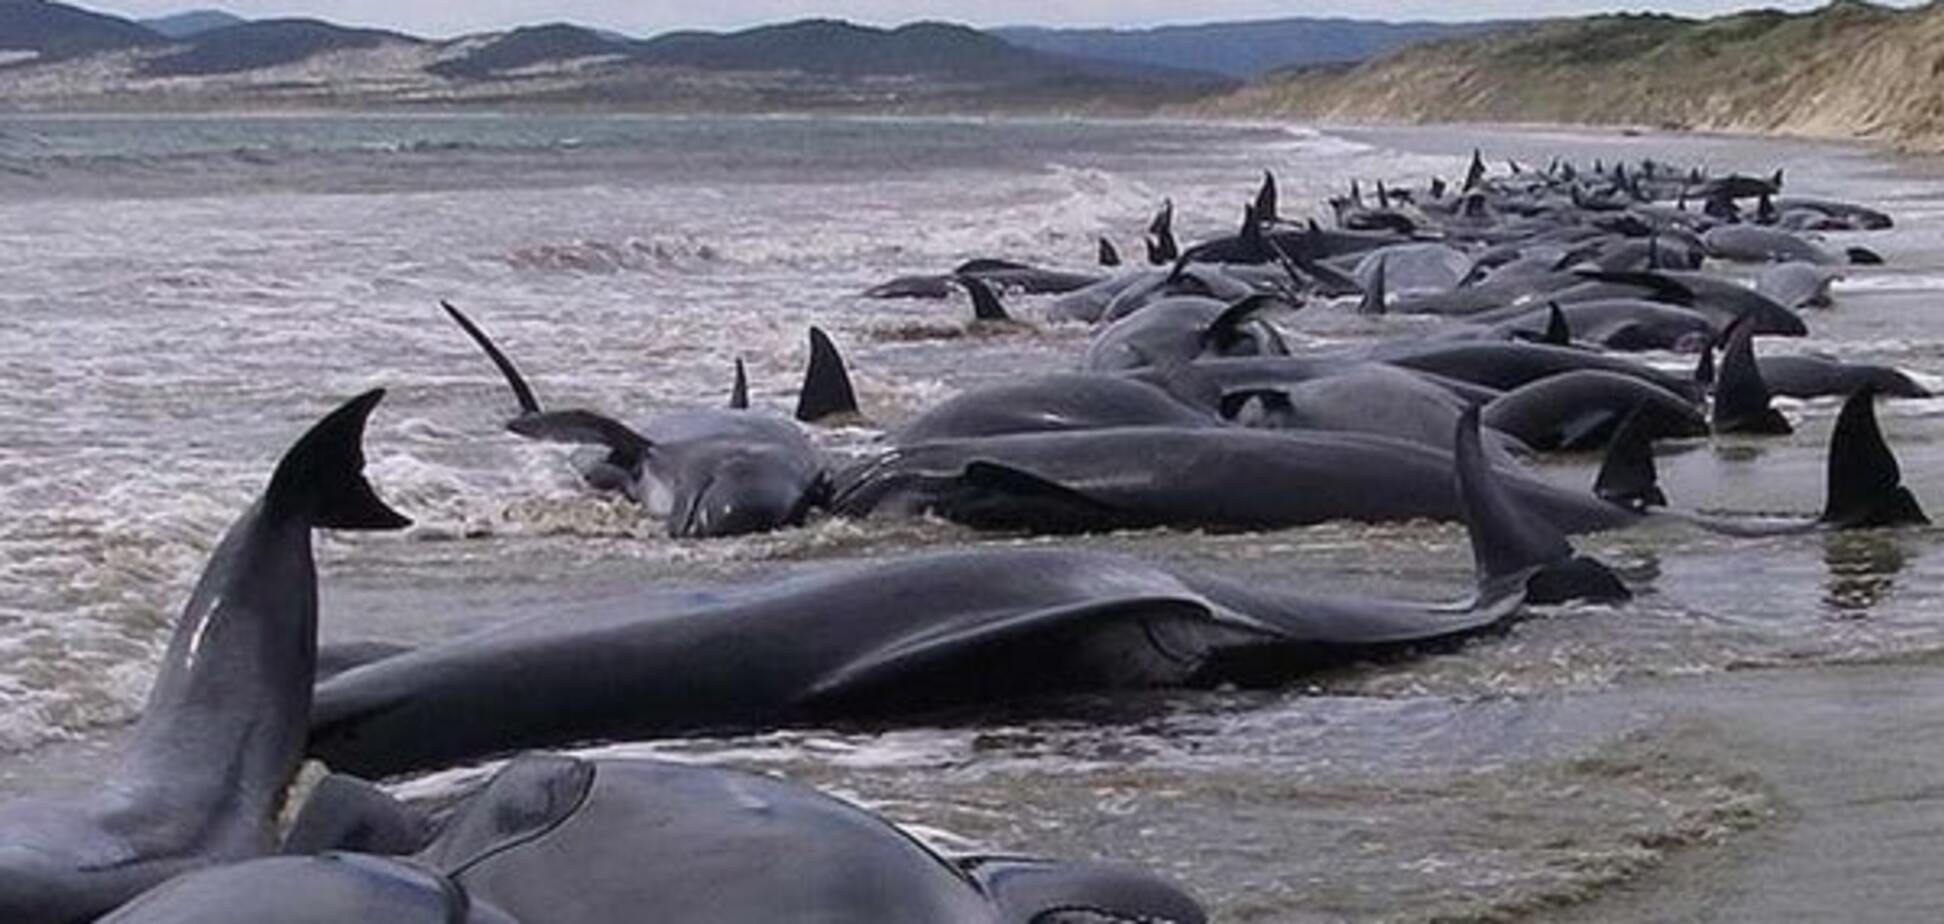 Масове самогубство: в Індії на берег викинулася сотня дельфінів